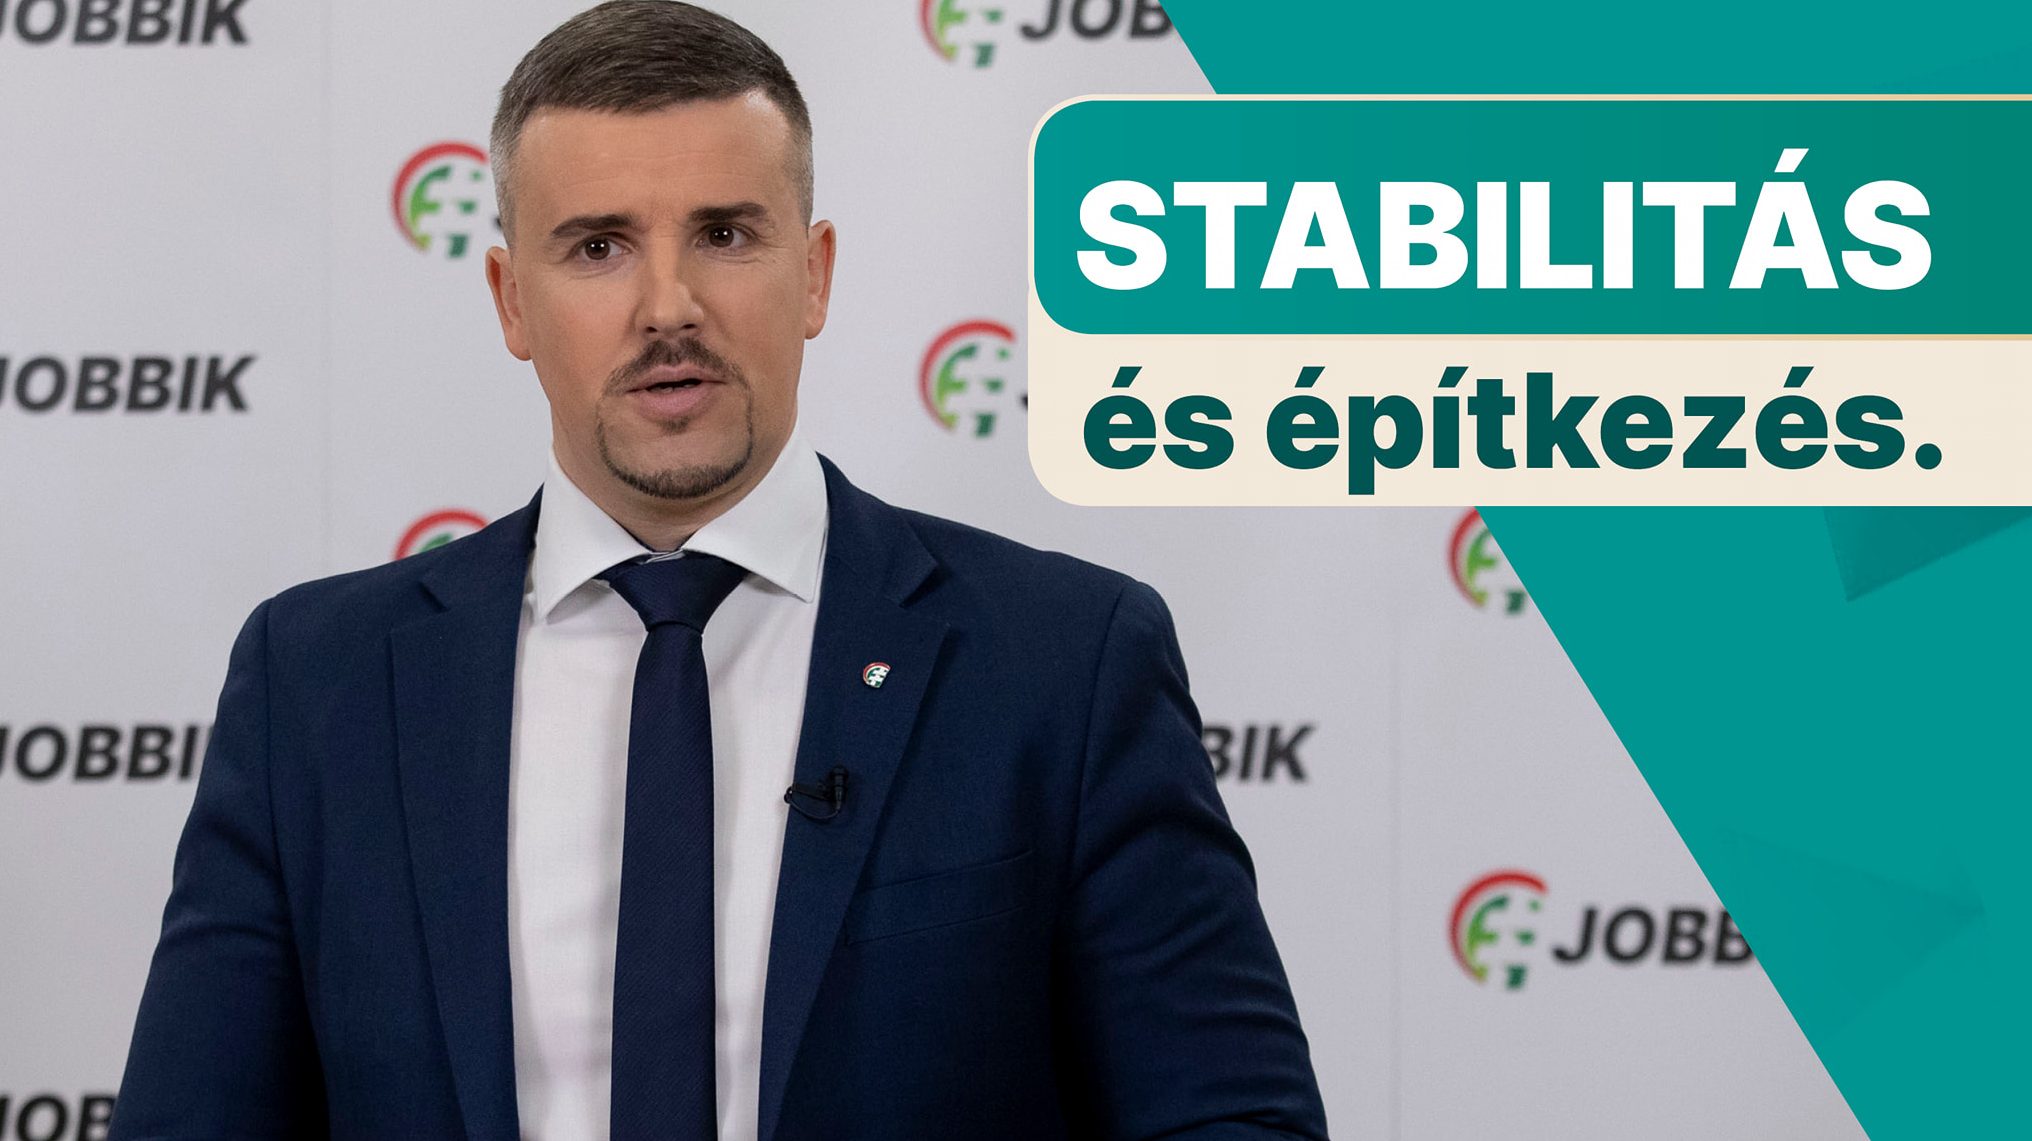 Jakab Péter: A Fidesz imádná, ha elmennék Mészáros Lőrinc lapjához szakérteni, mint Vona Gábor